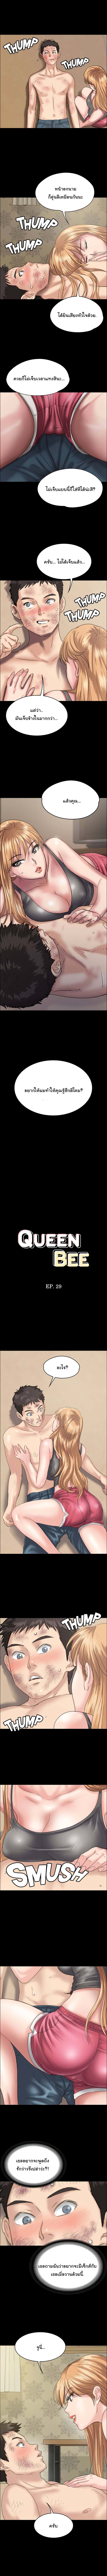 Queen Bee 29-29